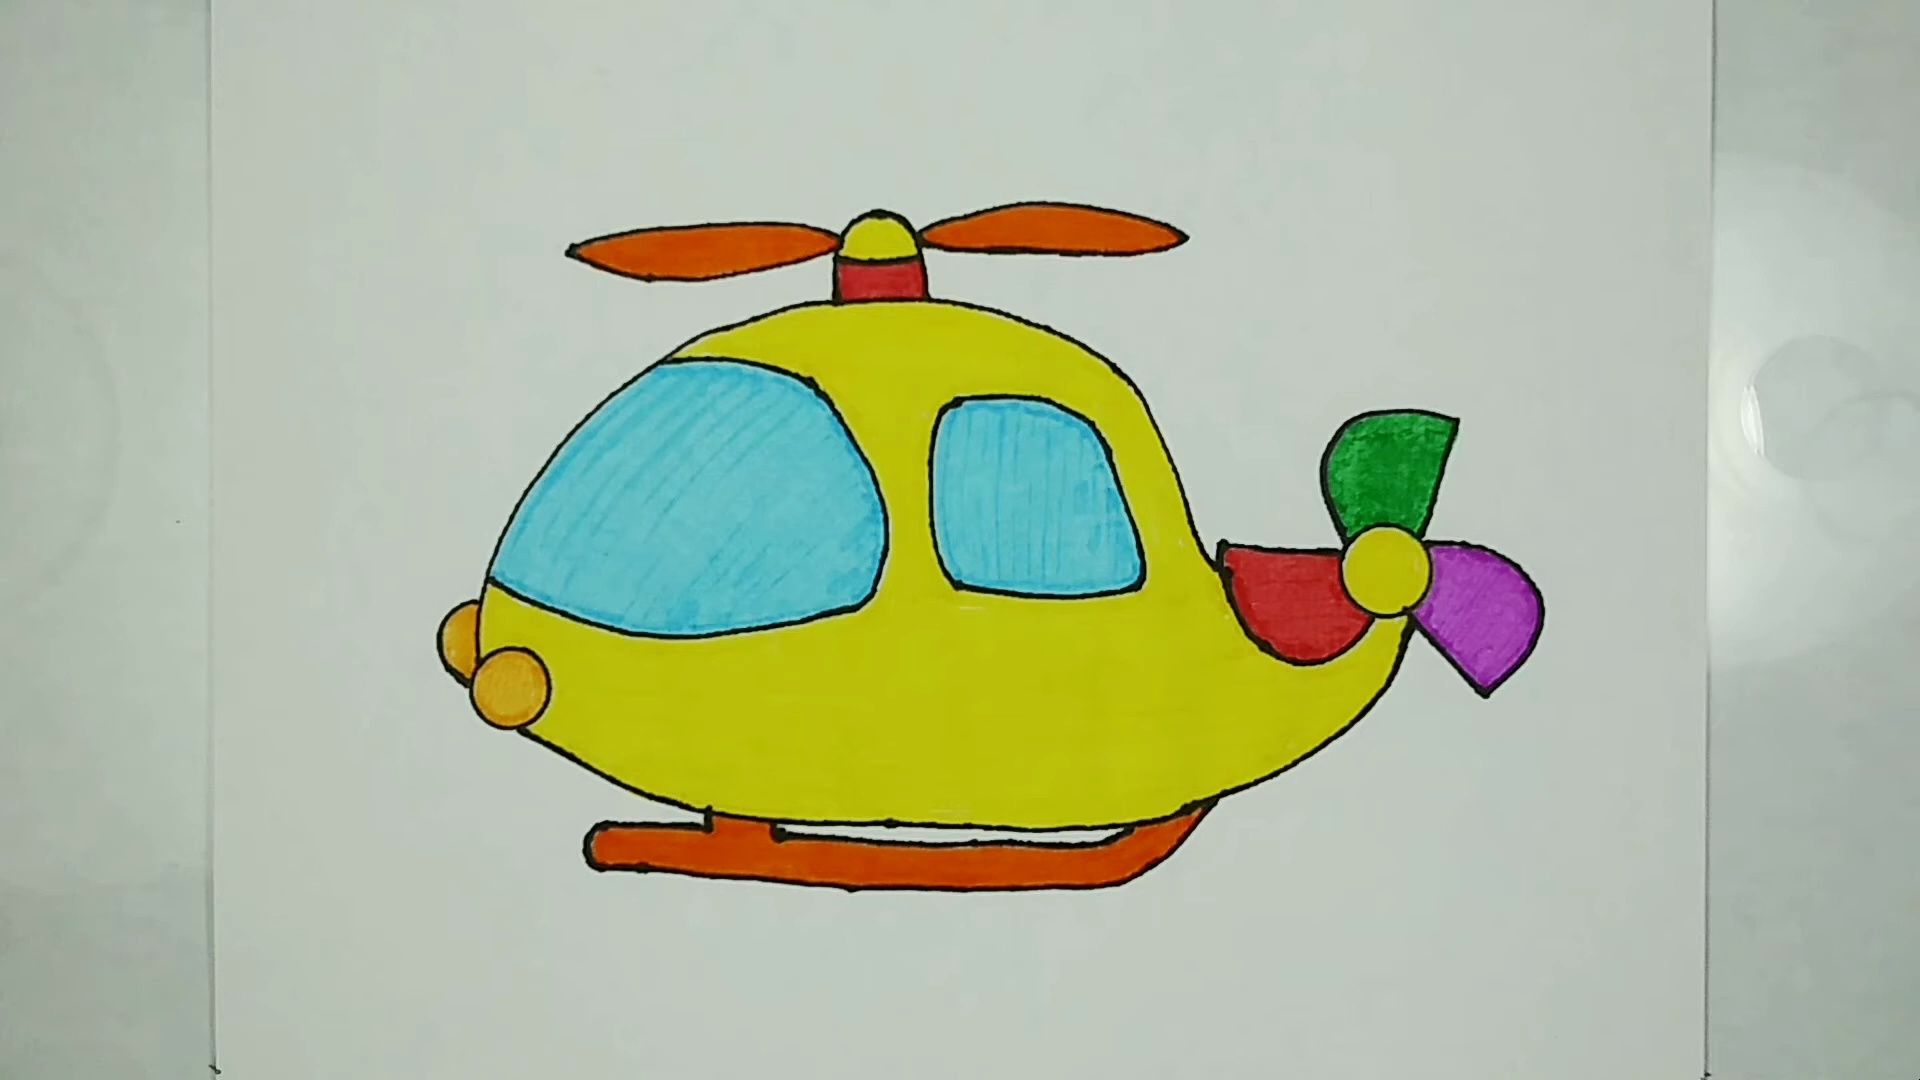 【儿童简笔画】简笔画教程:今天教大家如何画一个直升飞机